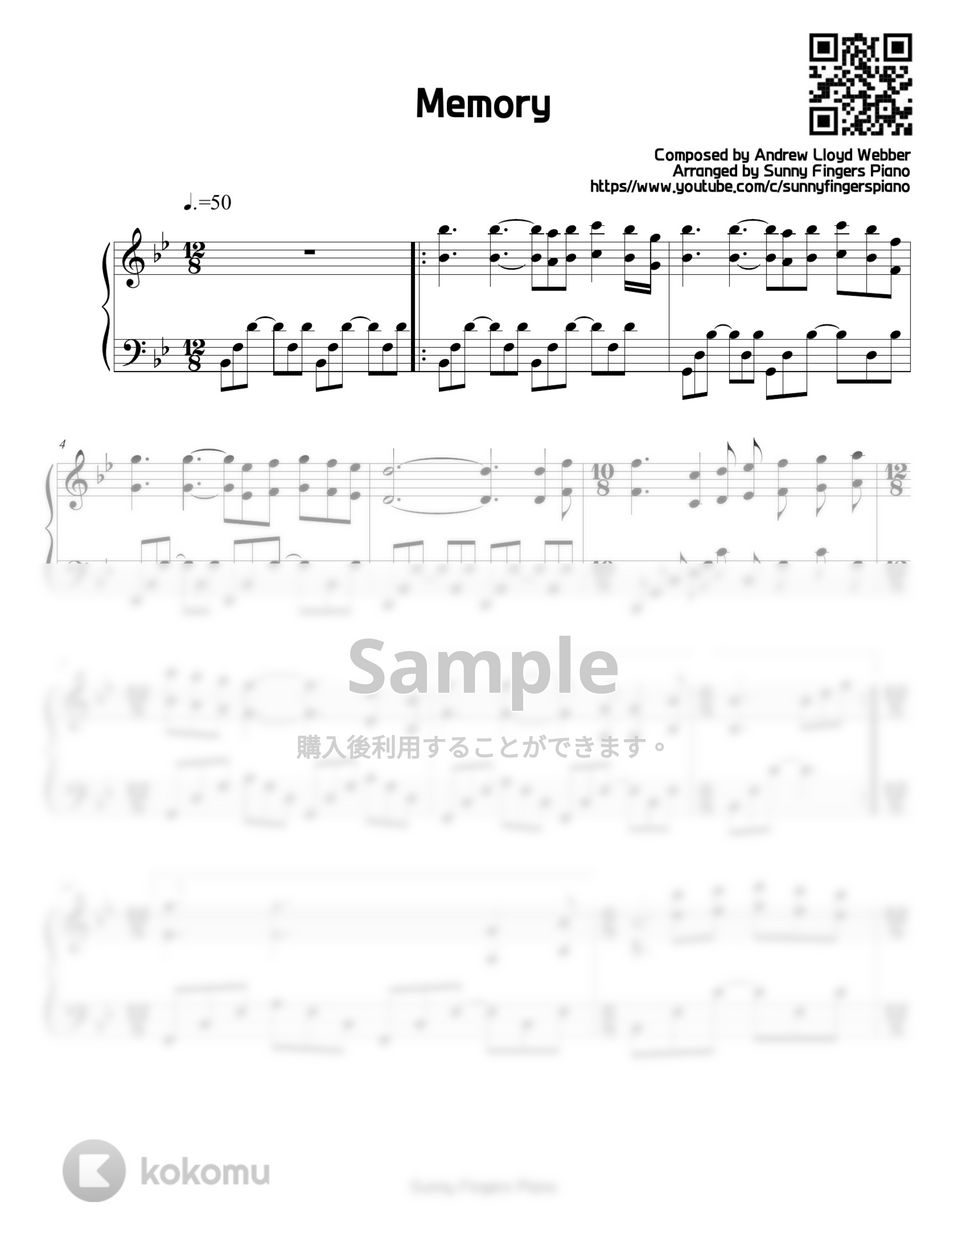 キャッツ - Memory by Sunny Fingers Piano